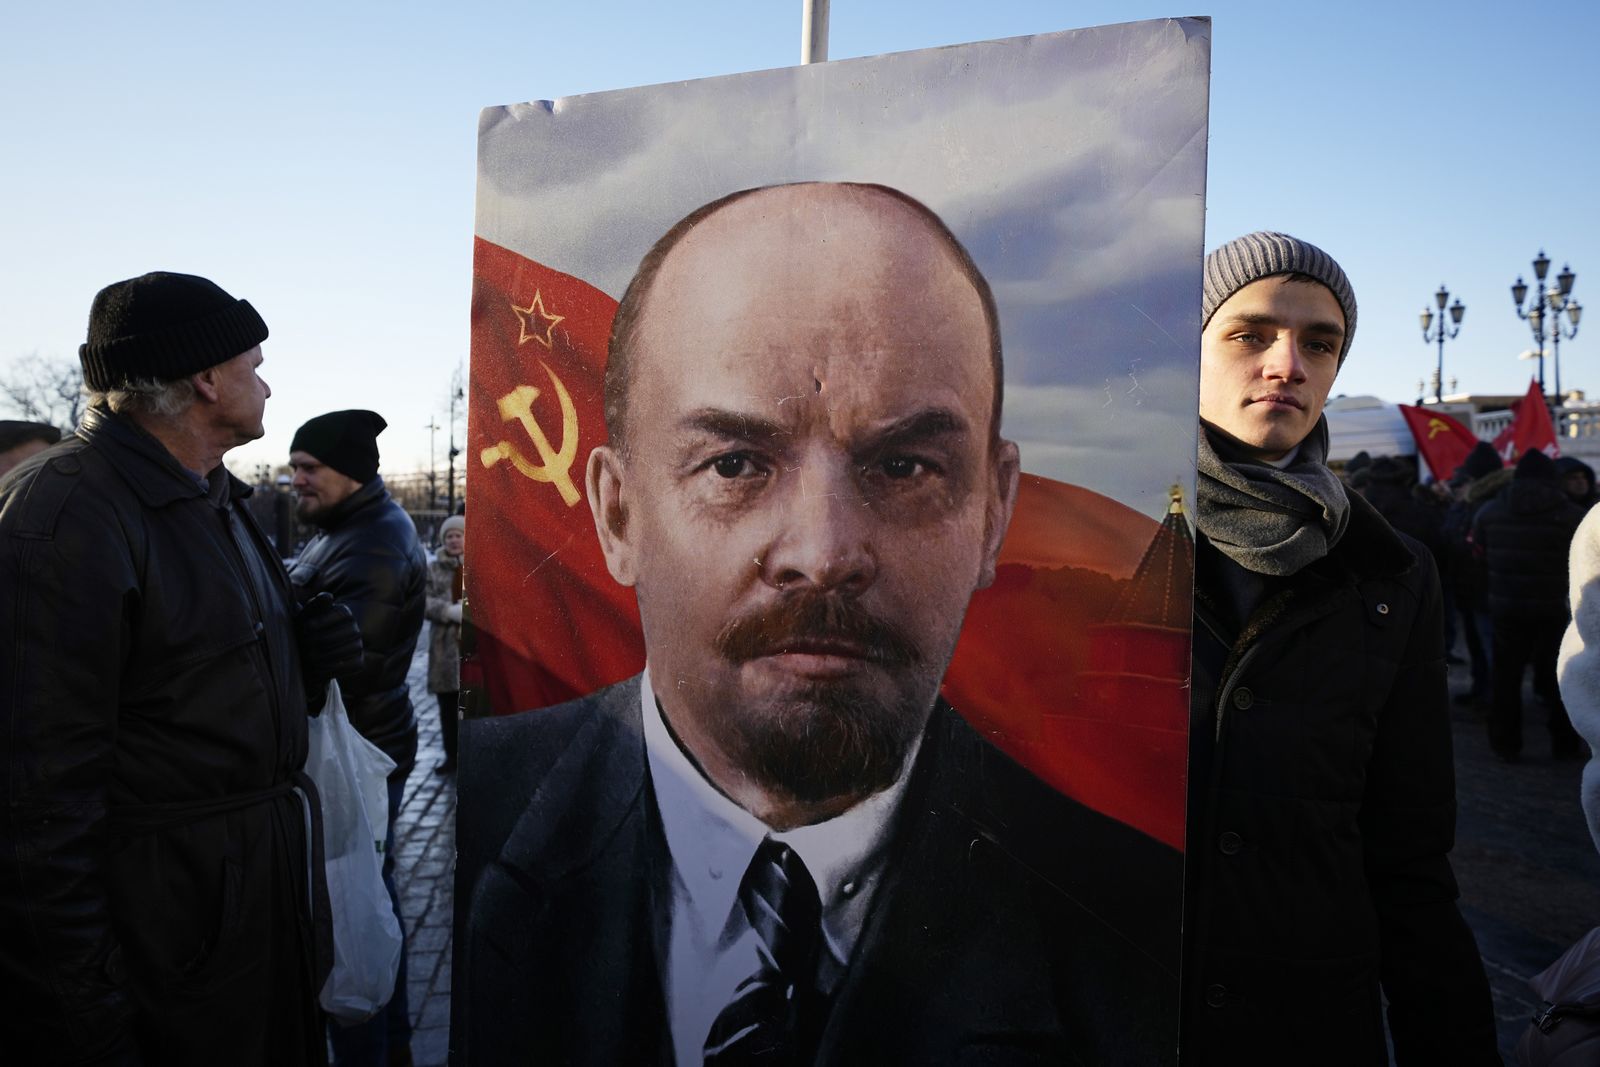 ρωσία: τίμησαν τα 100 χρόνια από τον θάνατο του λένιν